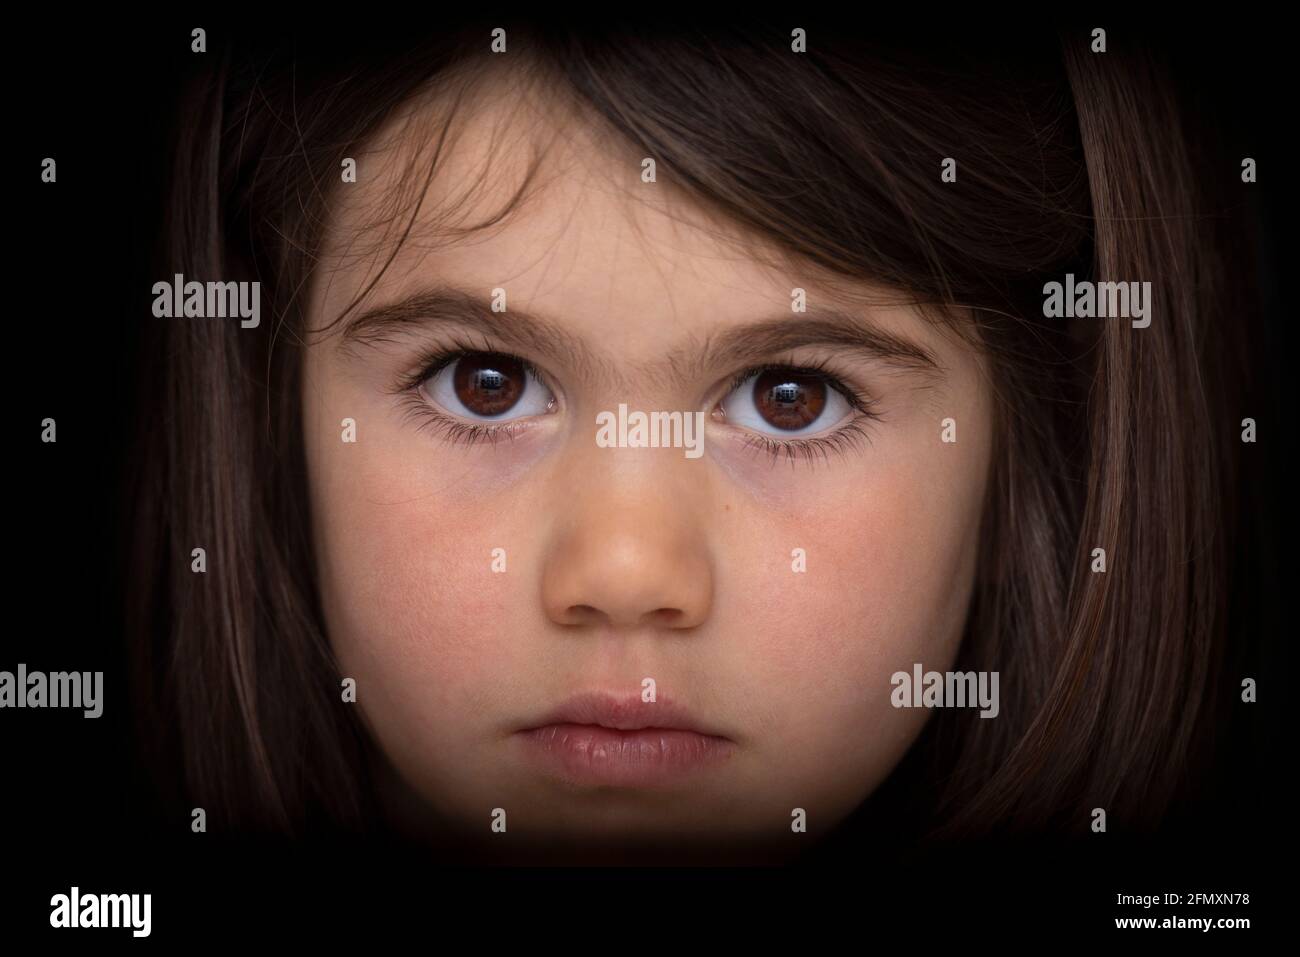 Ritratto di una ragazza di quattro anni dall'aspetto serio. Sguardo intenso. Foto Stock